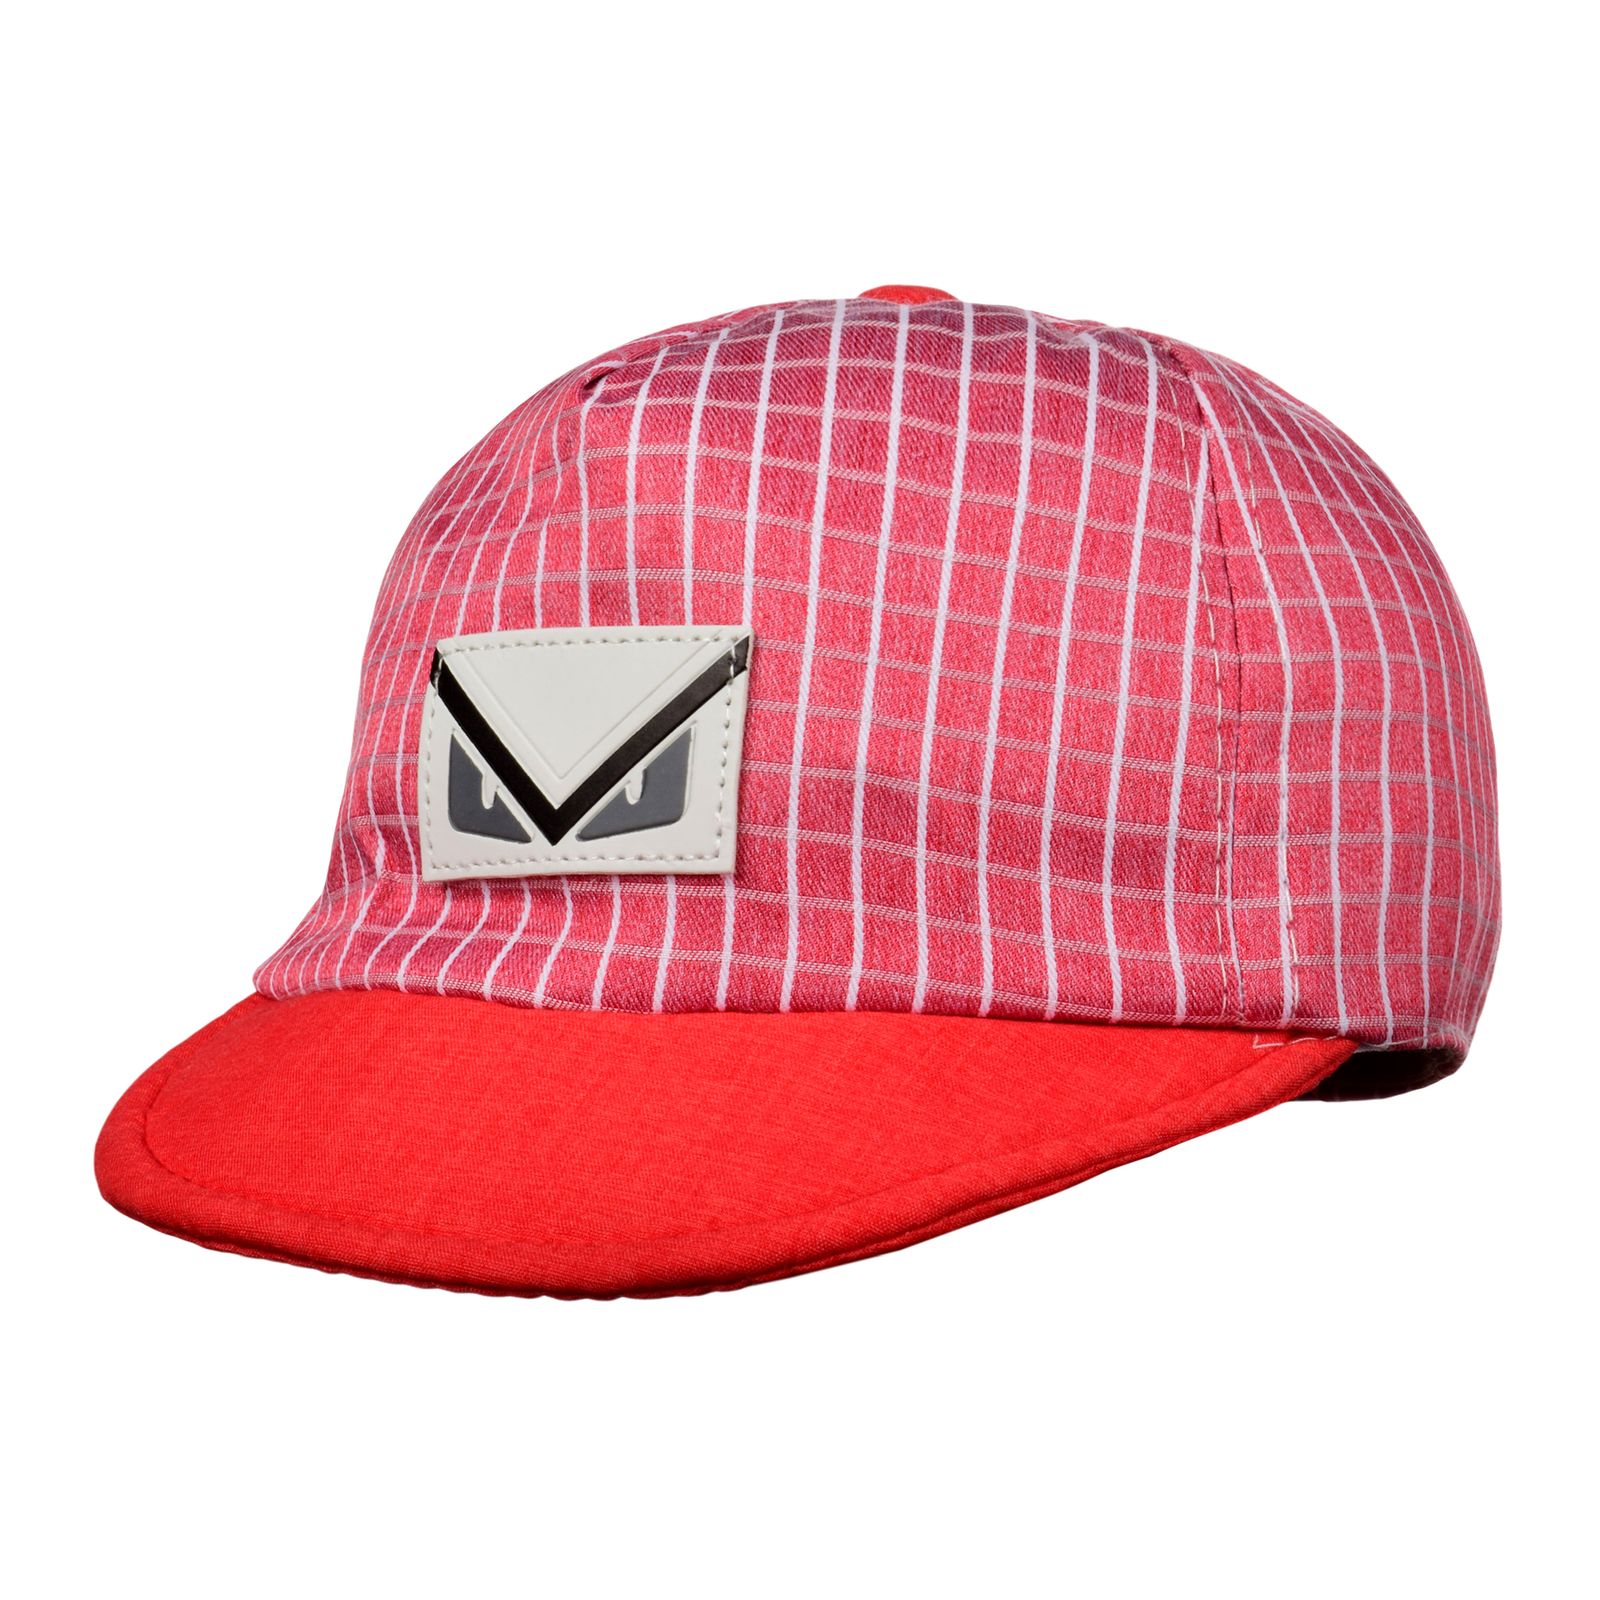 کلاه کپ بچگانه کد N31651 -  - 2